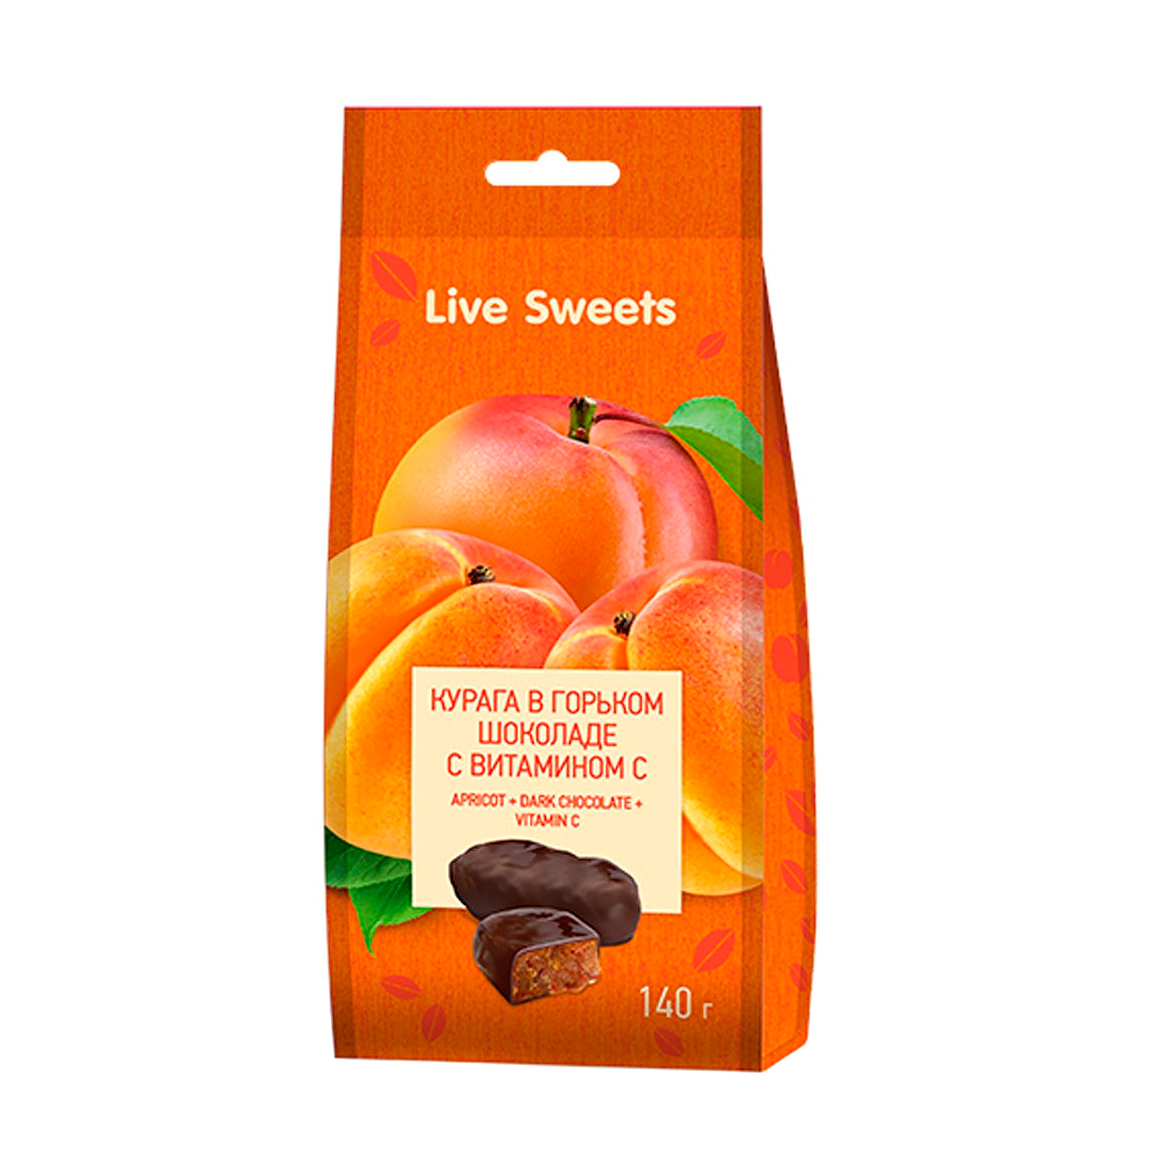 Конфеты глазированные Лакомства для здоровья Live Sweets Курага в горьком шоколаде 140 г абрикос канадский харгранд